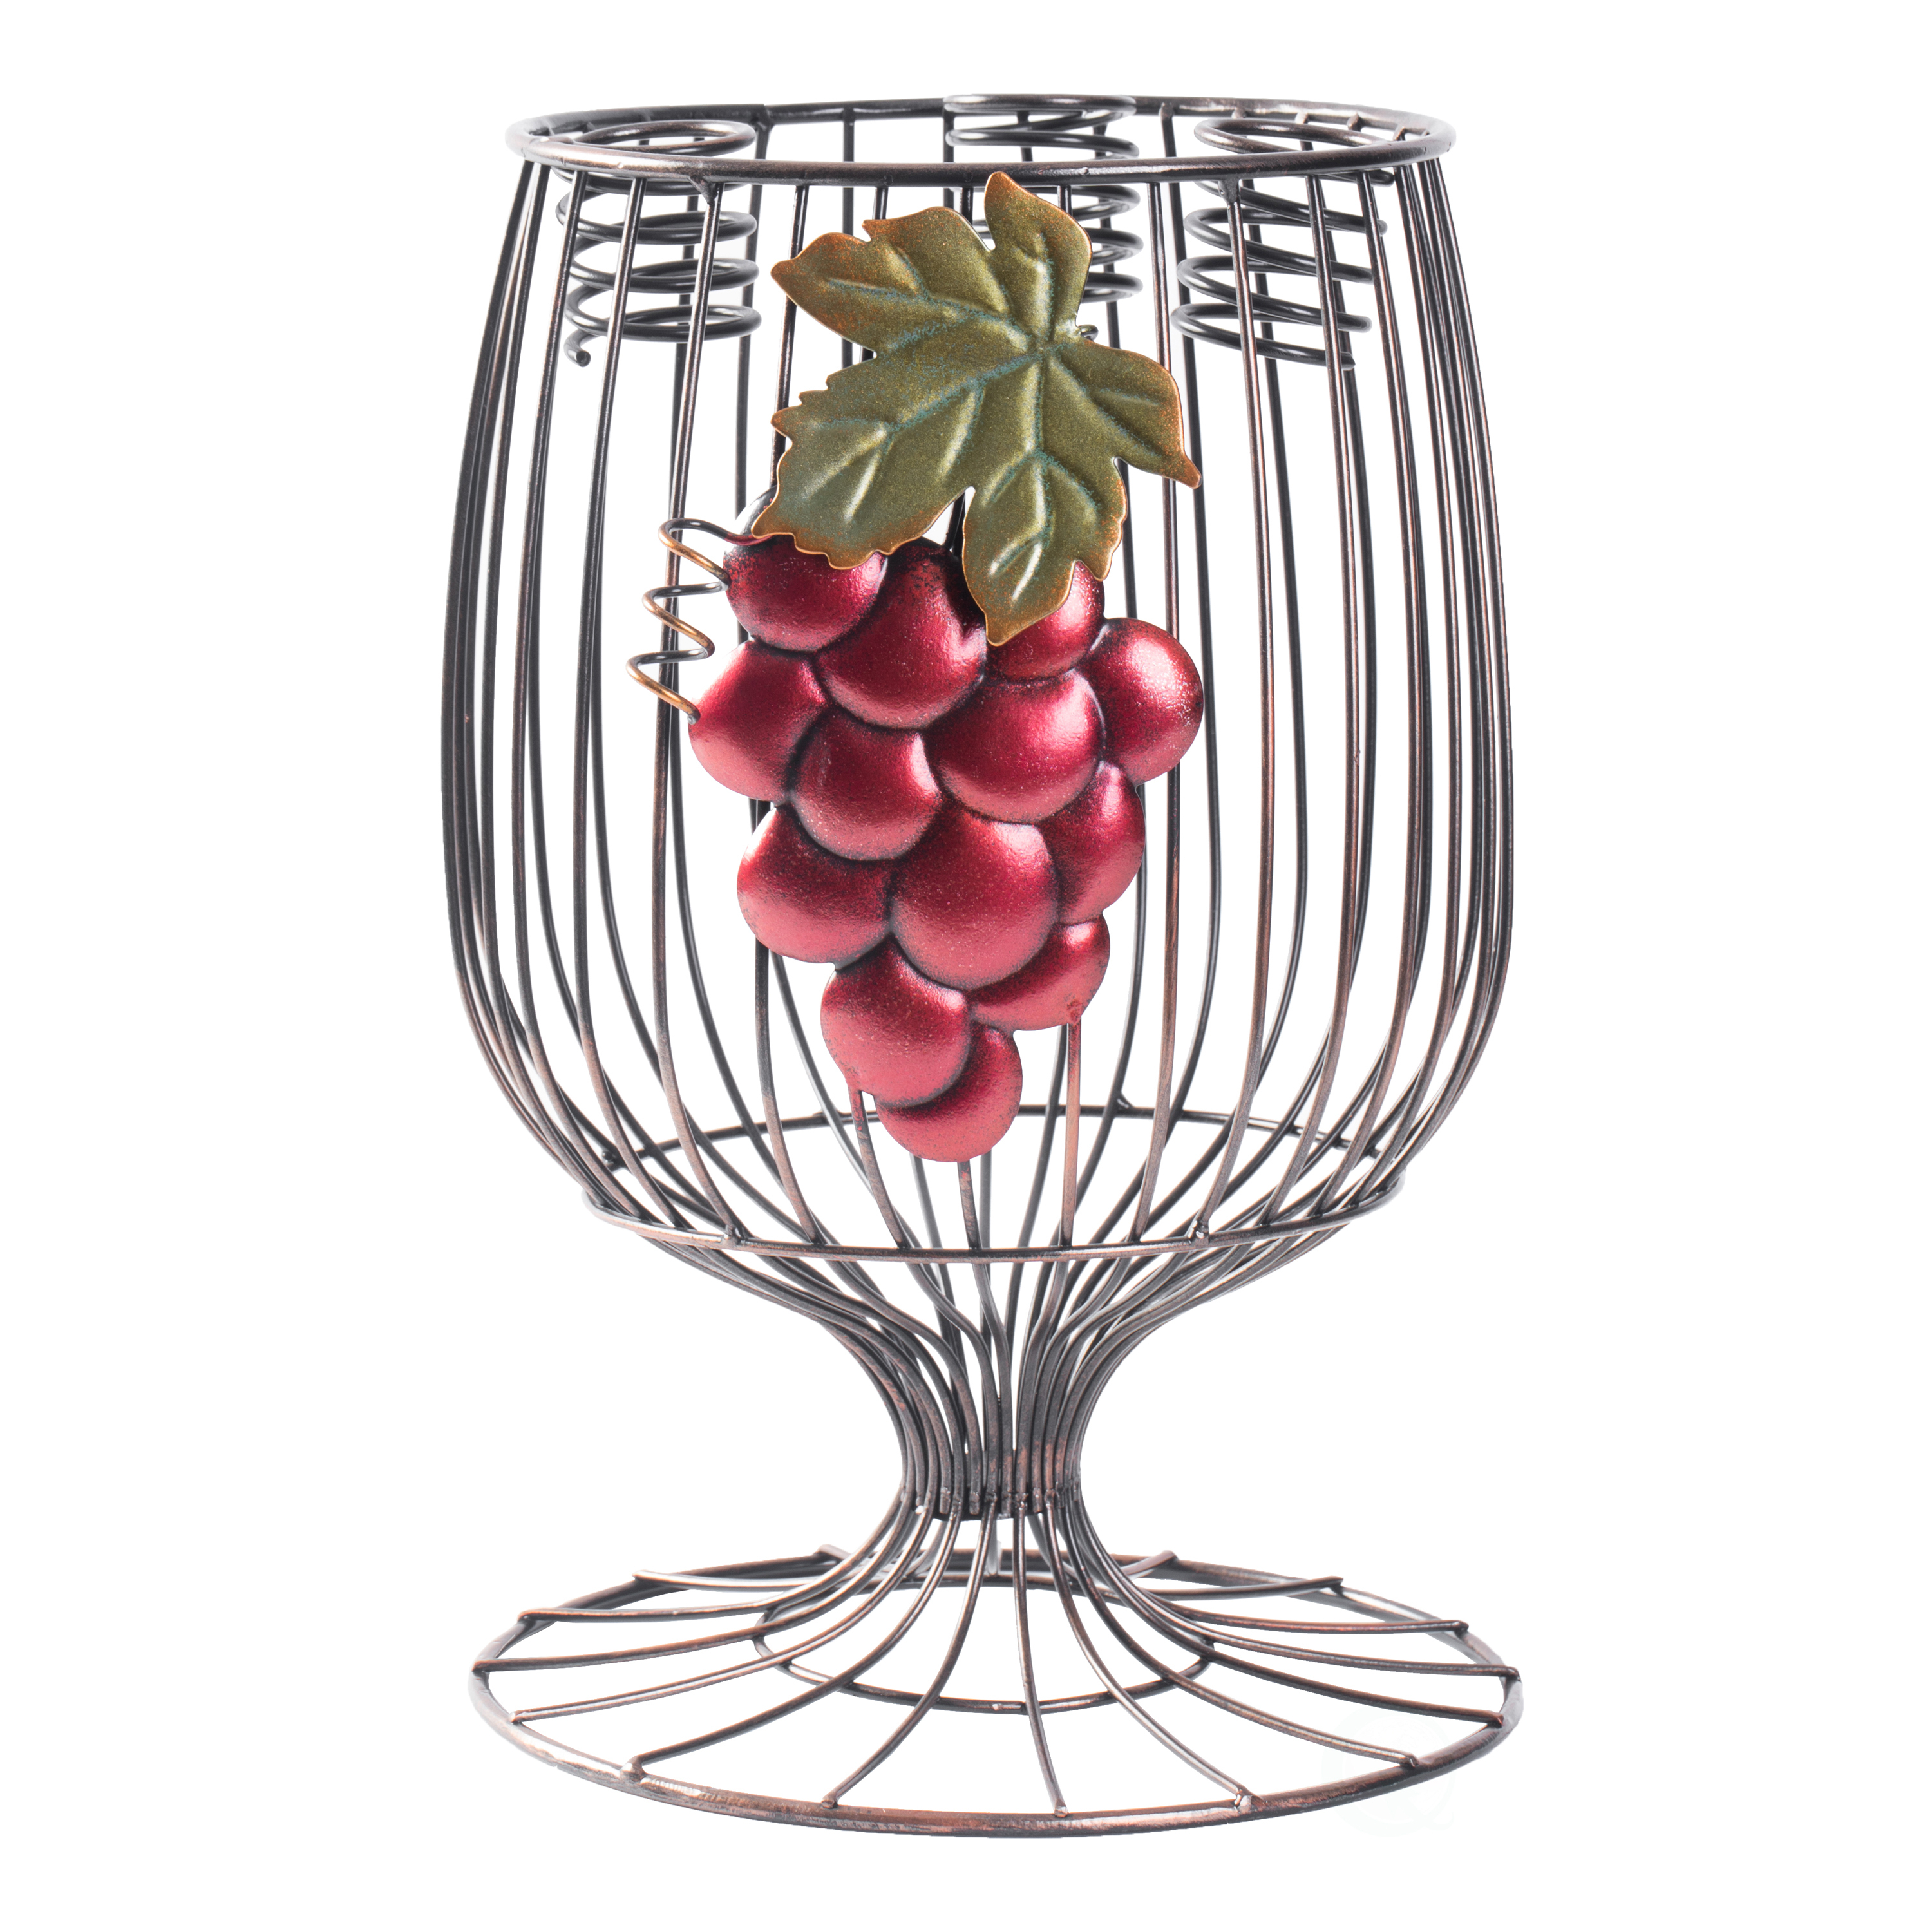 Vintage Decorative Metal Wire Goblet Shaped Freestanding Wine Bottle And Cork Holder